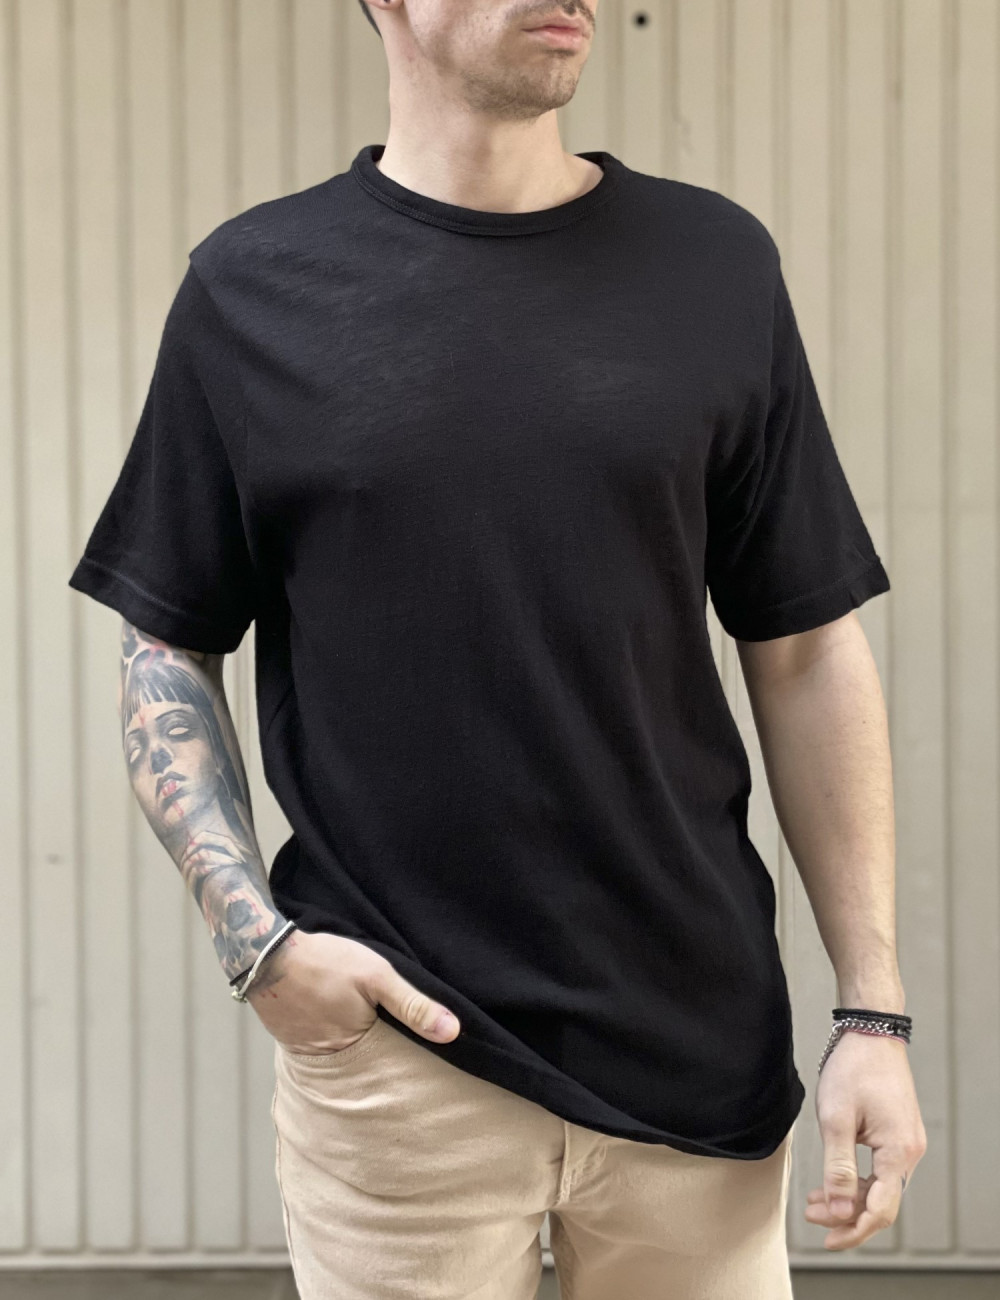 Ανδρικό μαύρο Oversized T-shirt TST2043